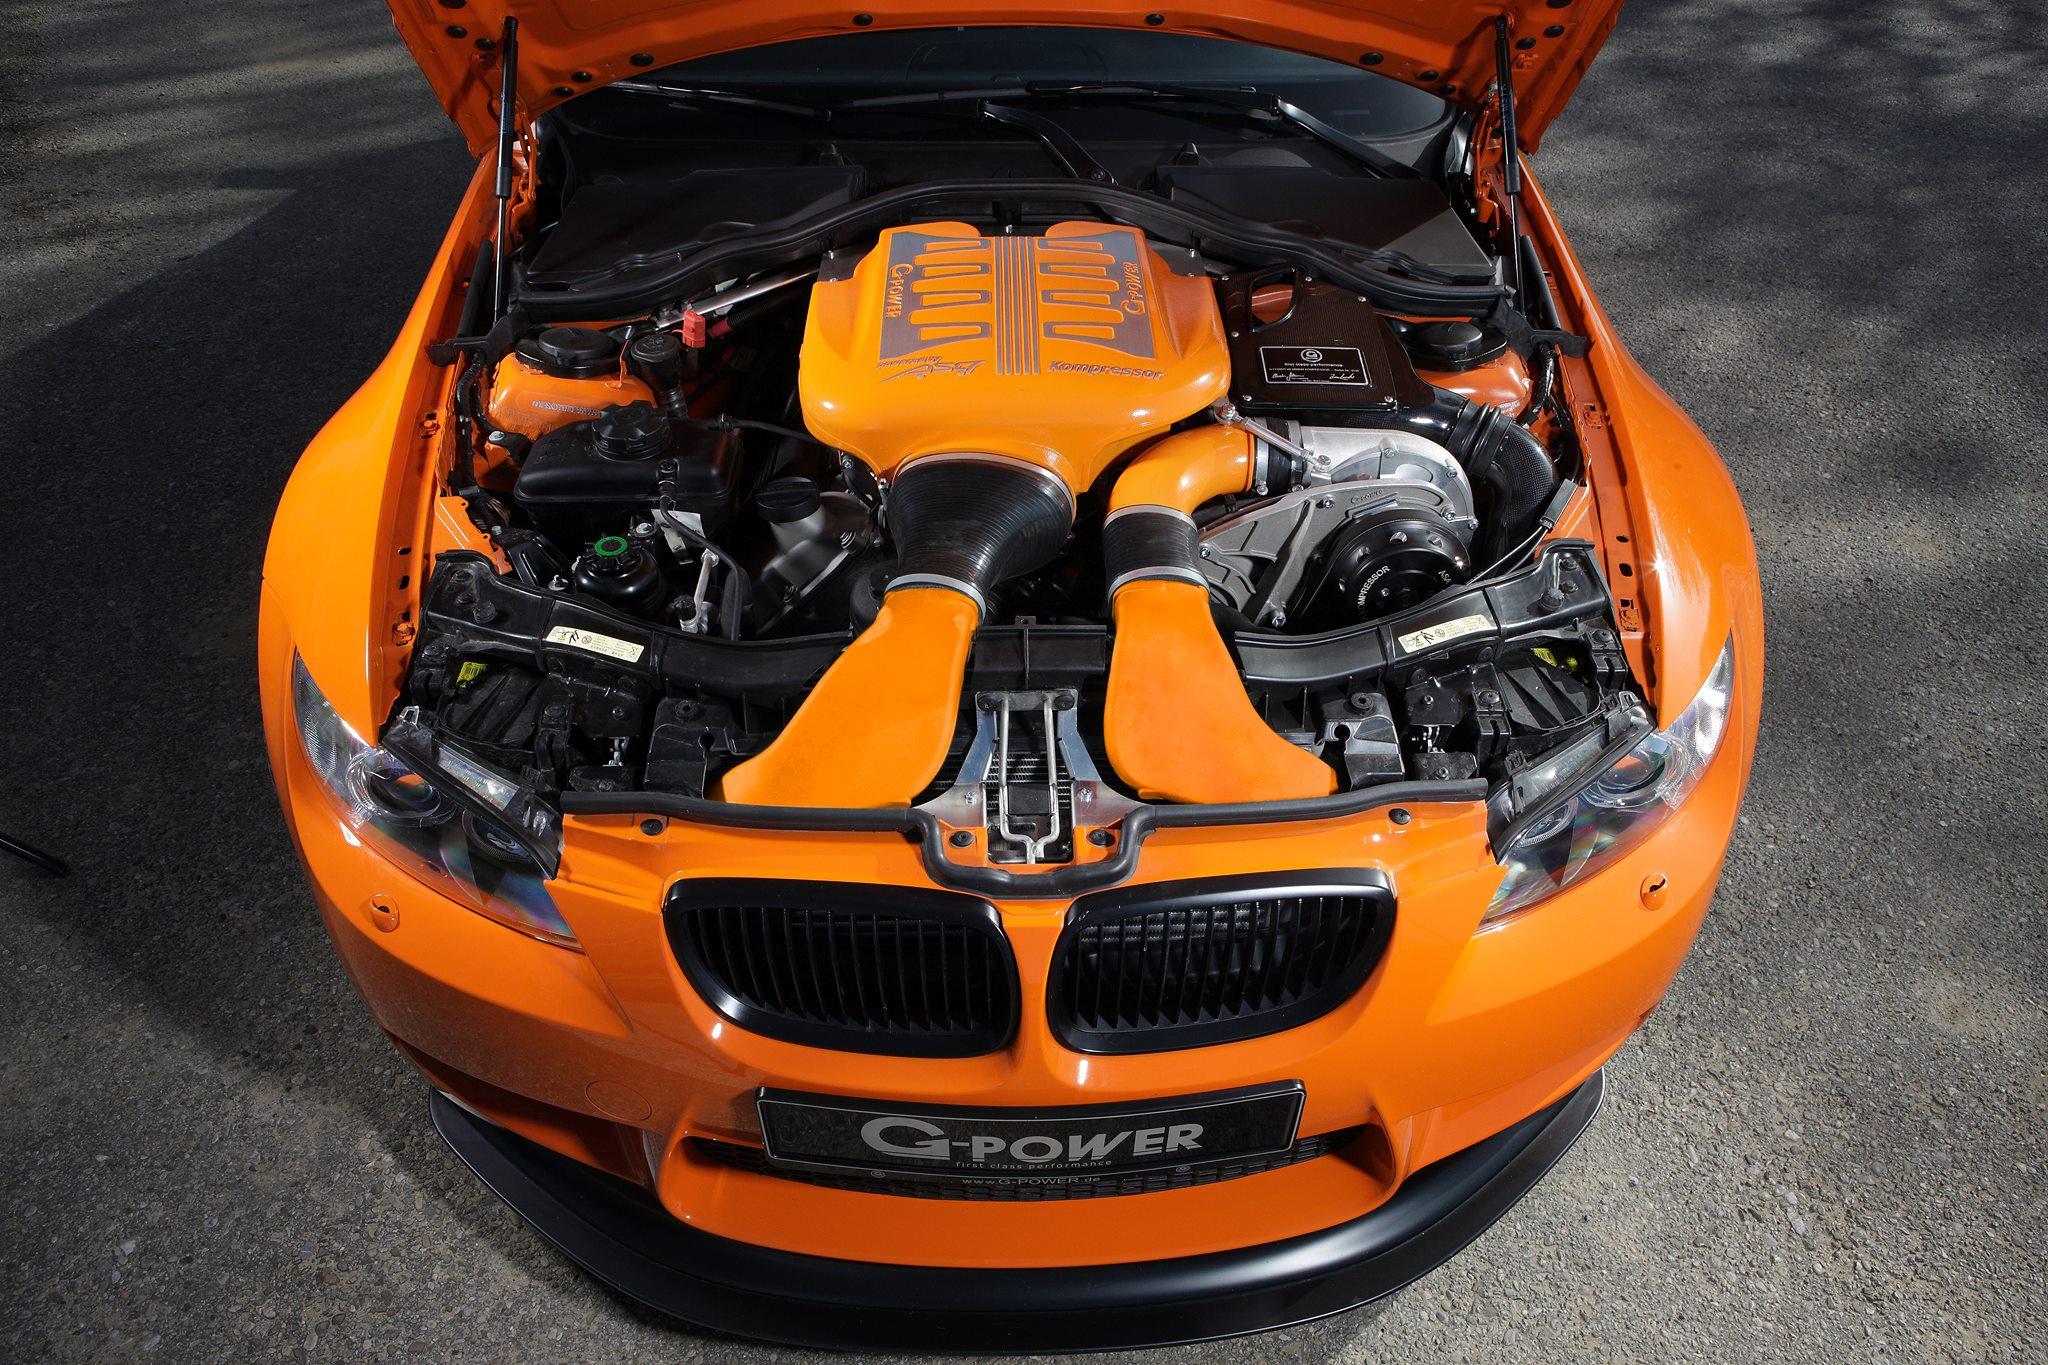 Двигатель на автомобиле является. BMW m3 GTS. BMW m3 g Power. M3 e92 GTS. BMW m3 e92 g Power.